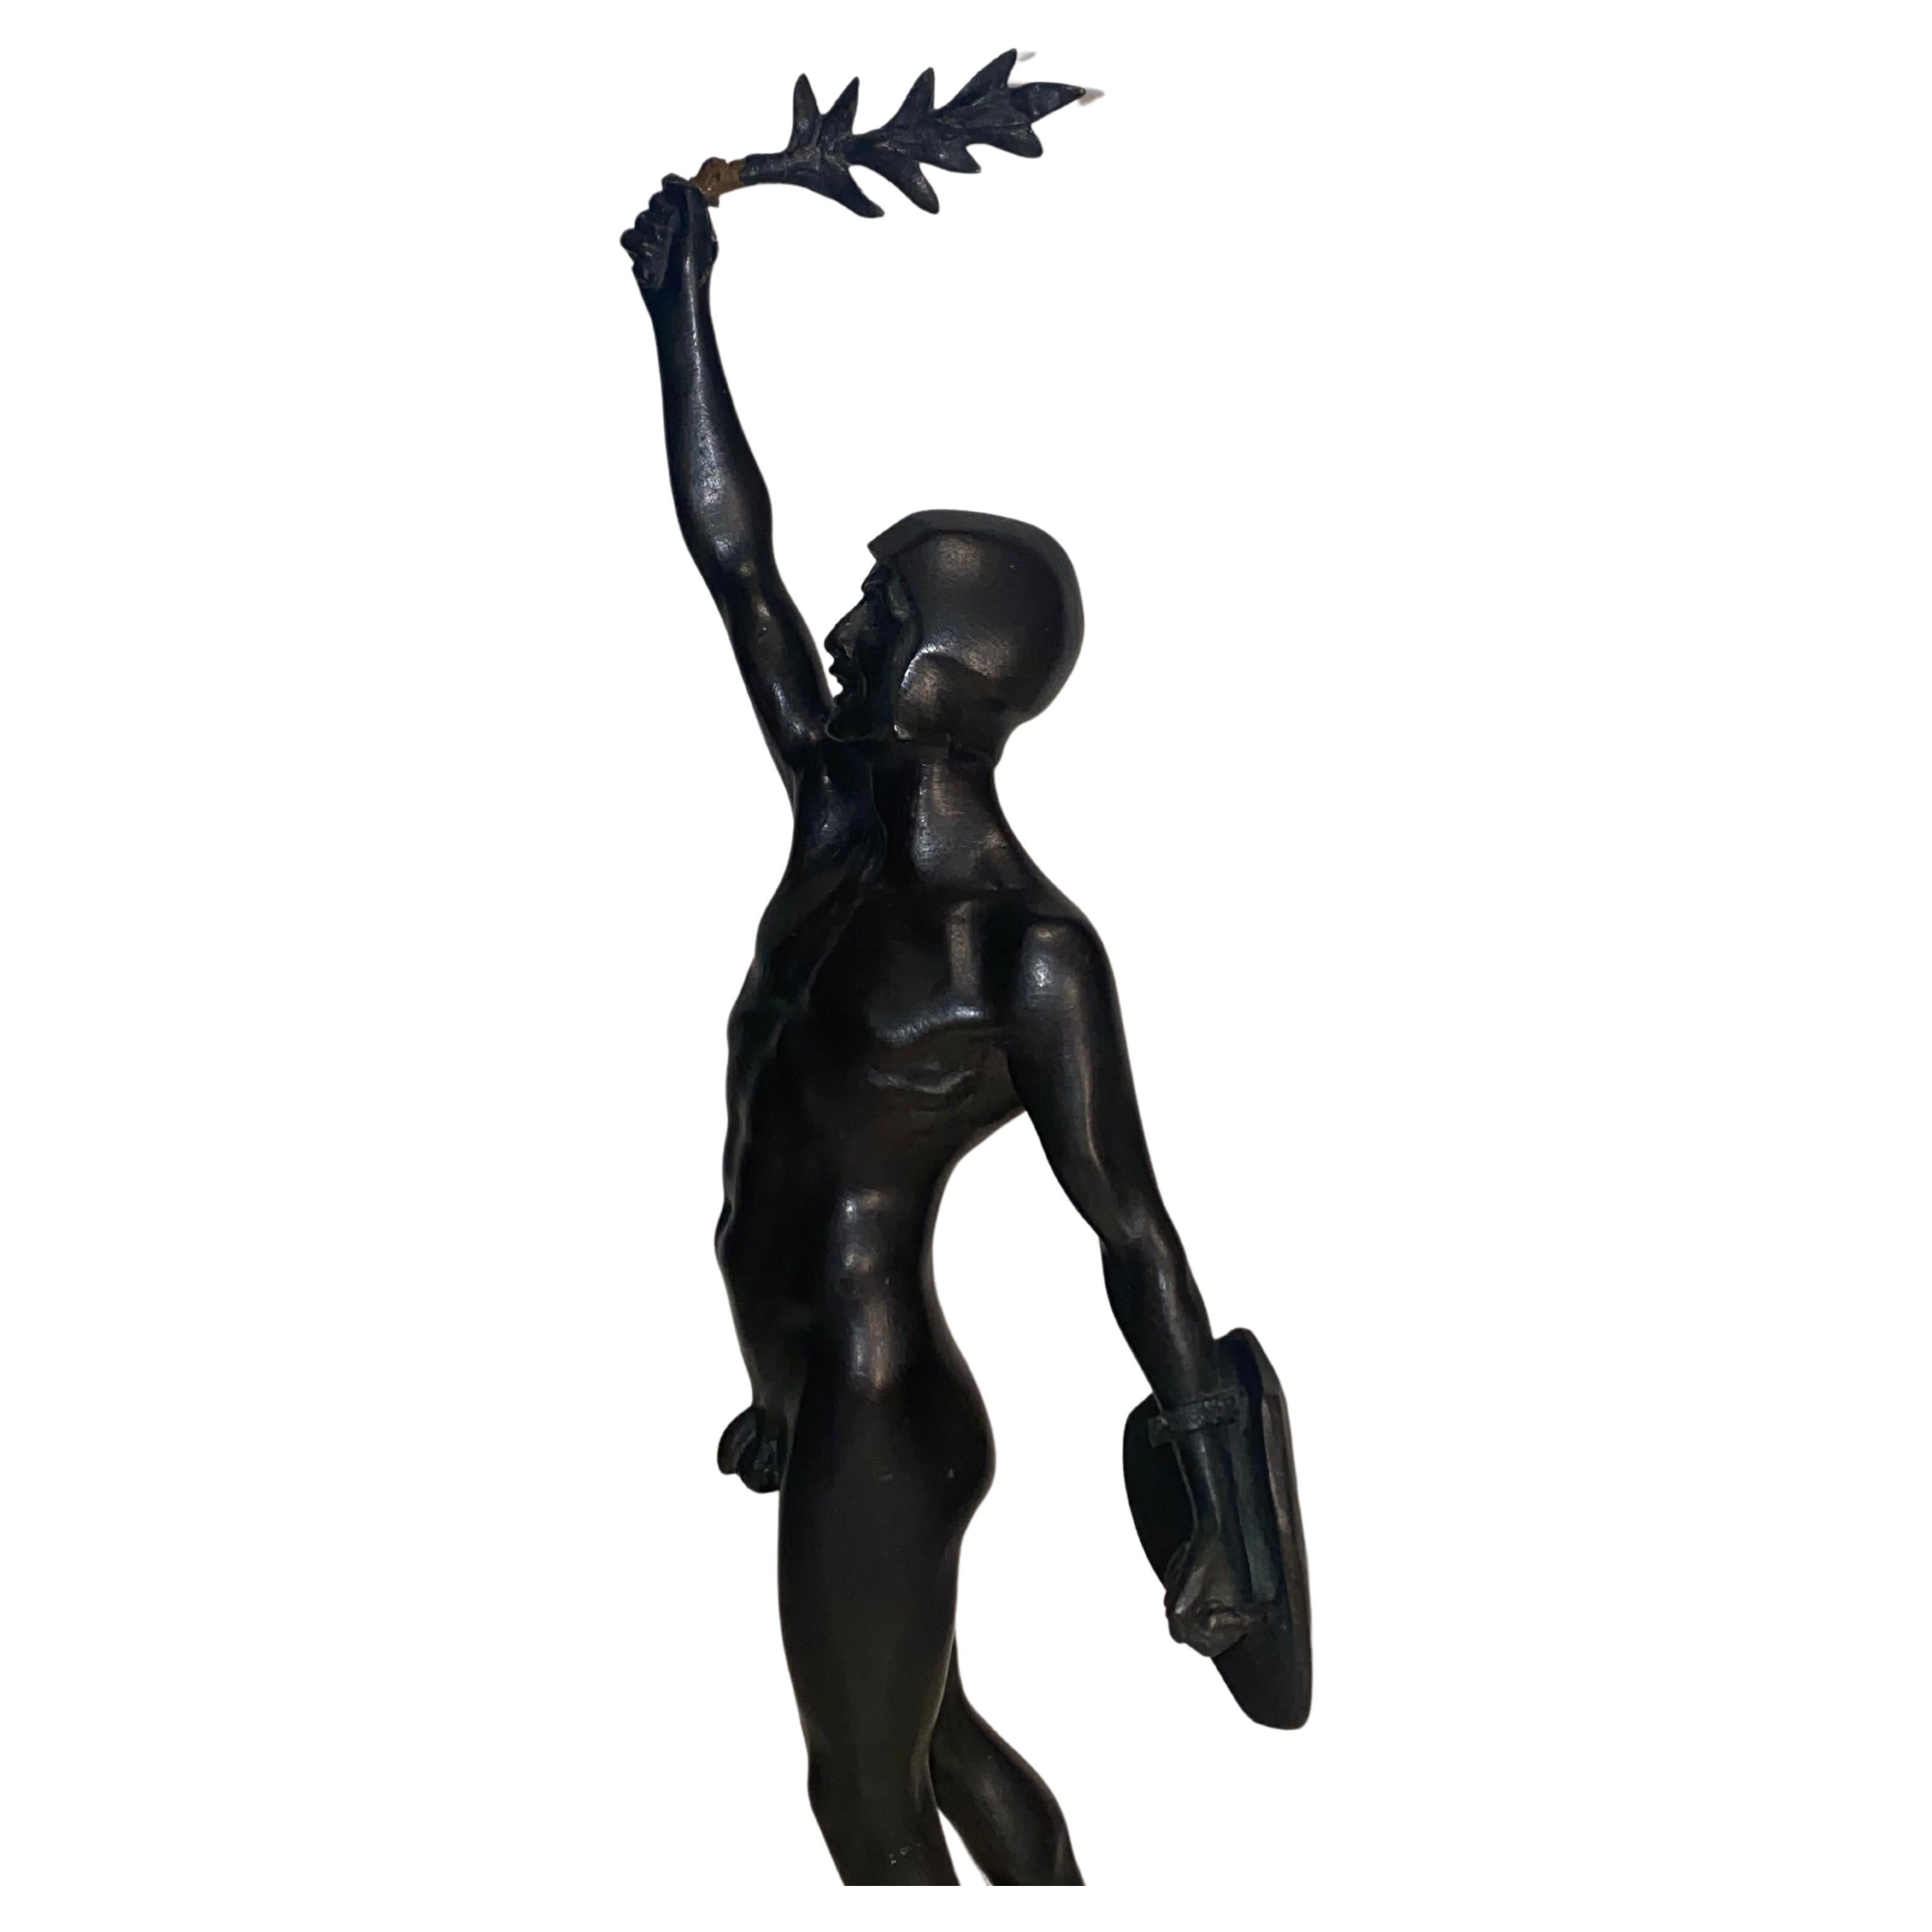 Persée (Le Victor), figure en bronze patiné.
Représentation debout de Persée victorieux, tenant le bouclier avec la tête de Méduse derrière lui et levant le laurier de la victoire.
Signé sur le socle, sur une base octogonale en marbre noir et